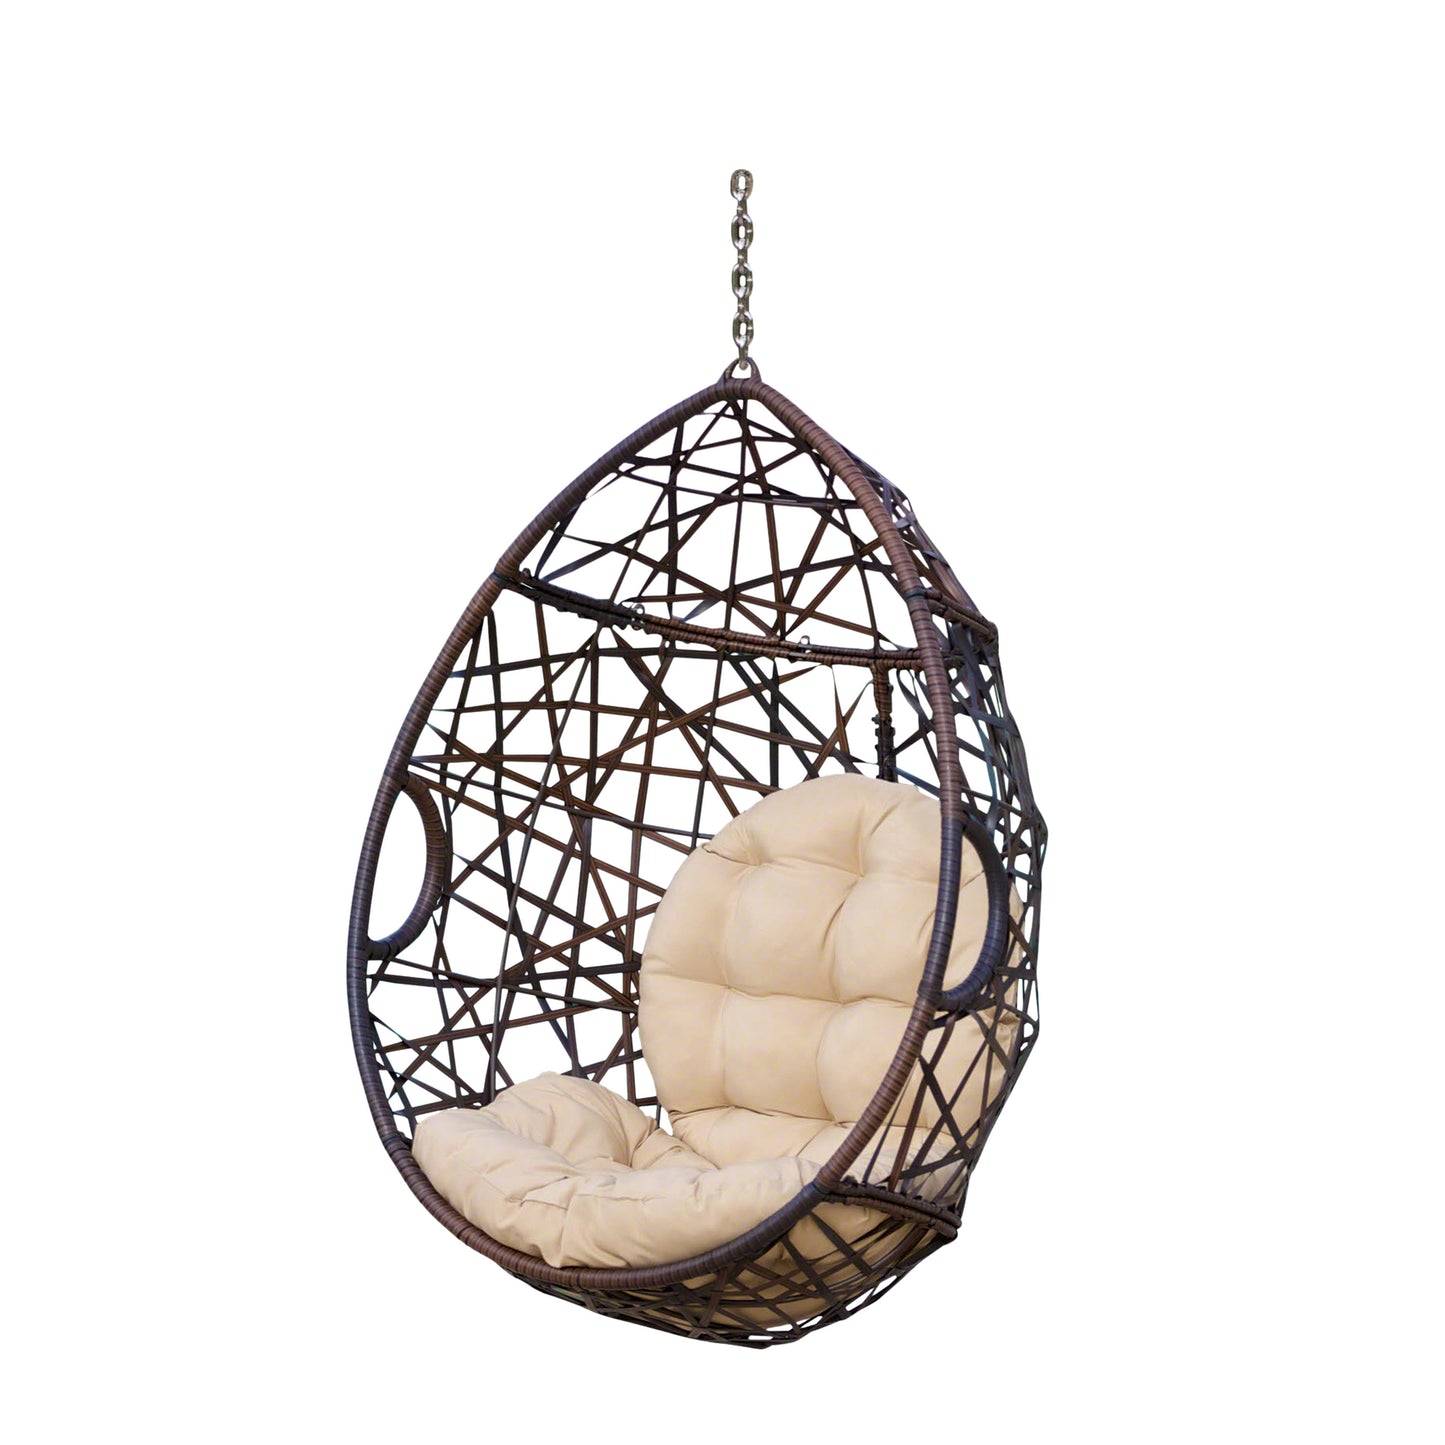 Berkley Outdoor Wicker Hanging Teardrop / Egg Chair